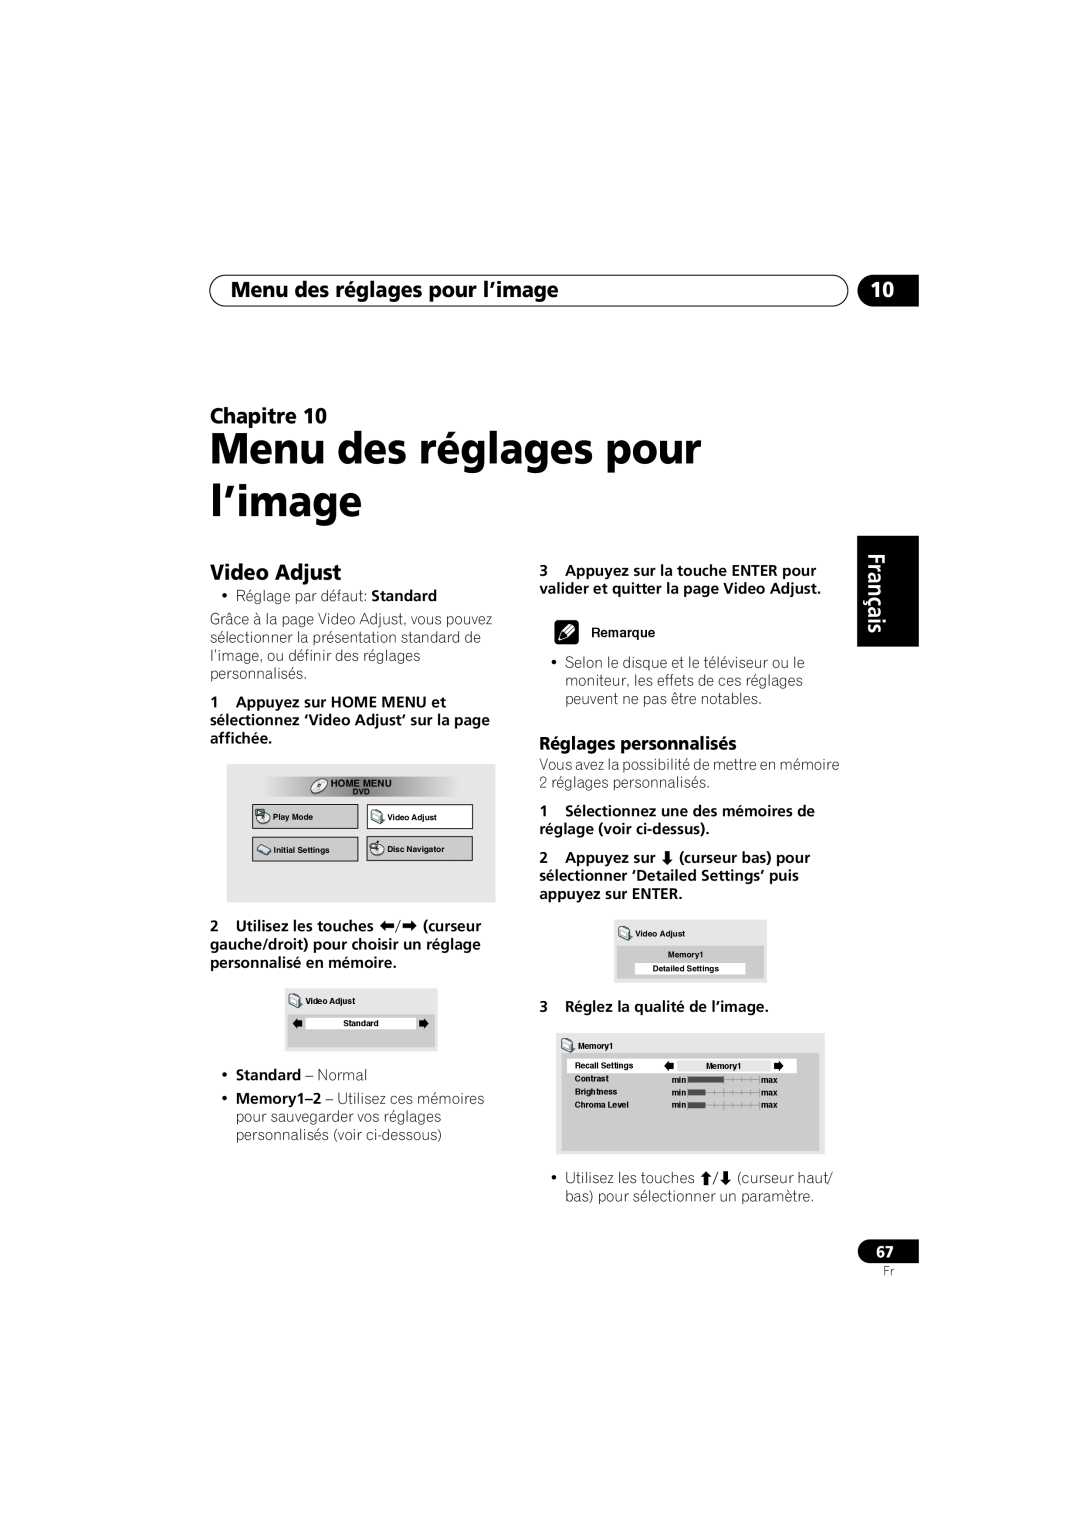 Pioneer S-DV99ST manual Menu des réglages pour l’image Chapitre, Français Français Deutsch, Réglages personnalisés 